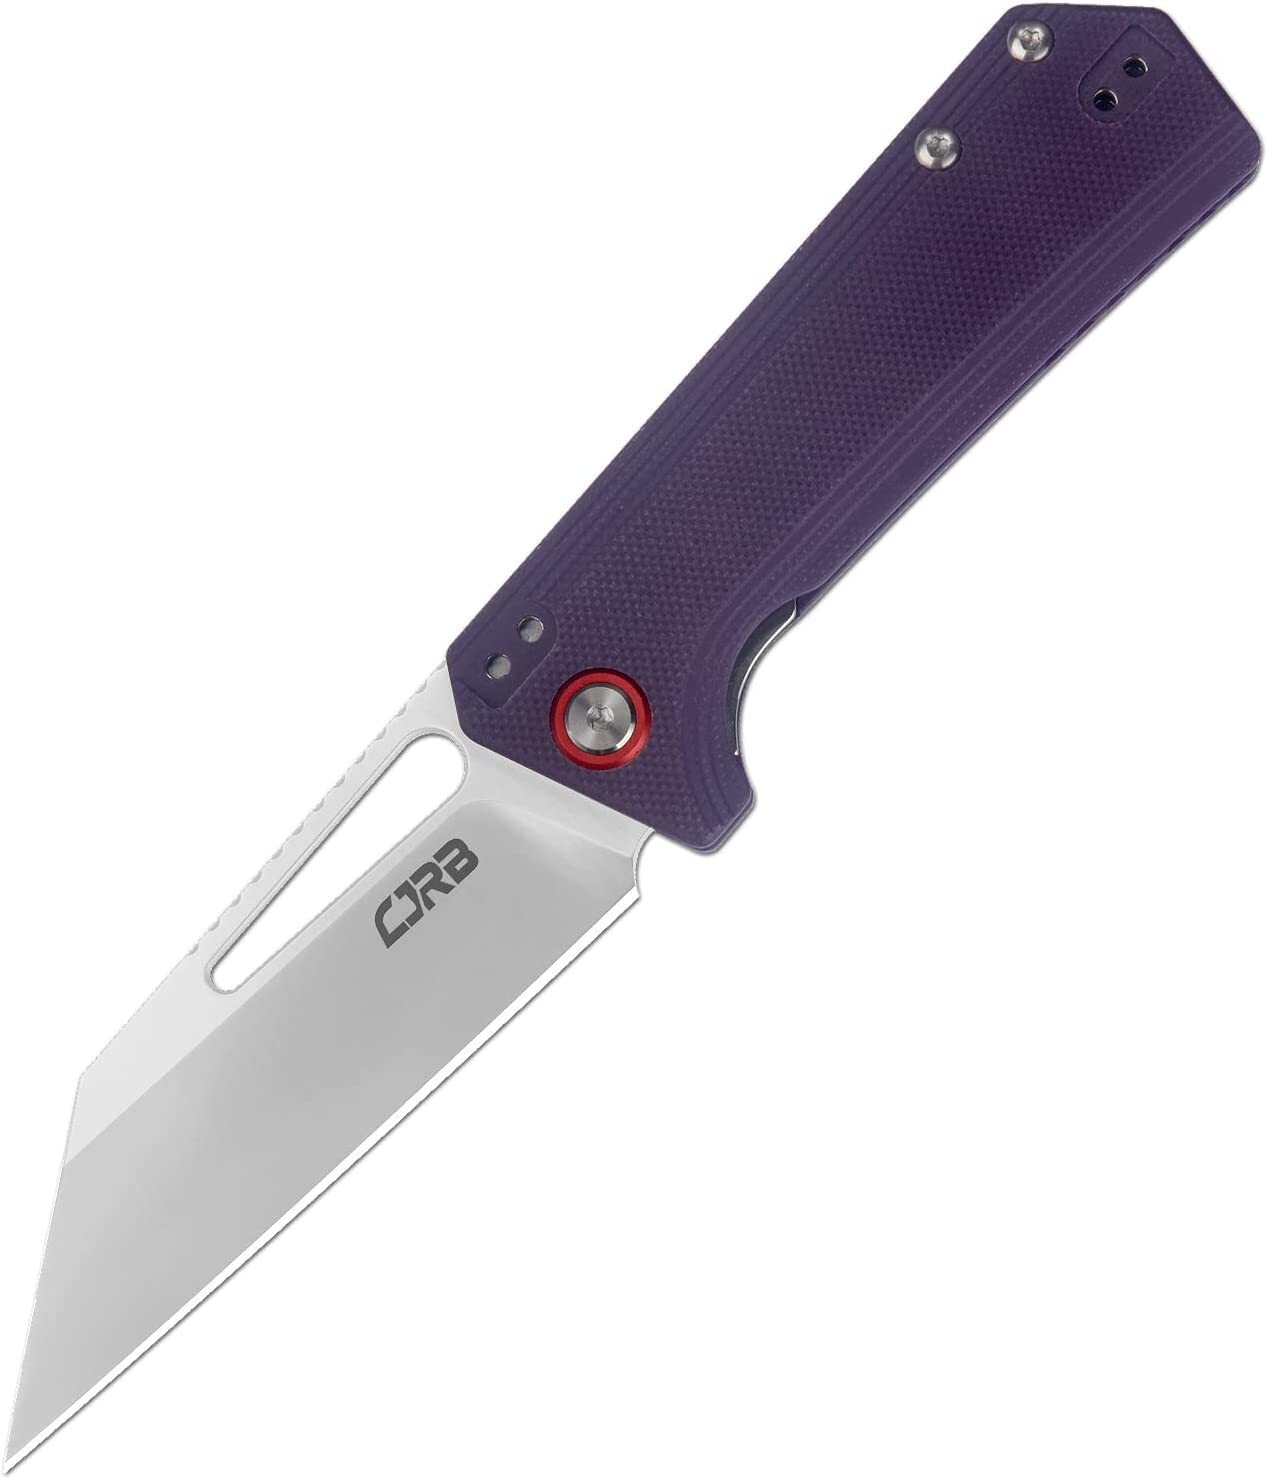 Складной нож CJRB Ruffian, сталь AR-RPM9, рукоять G10, фиолетовый, Бренды, CJRB Cutlery